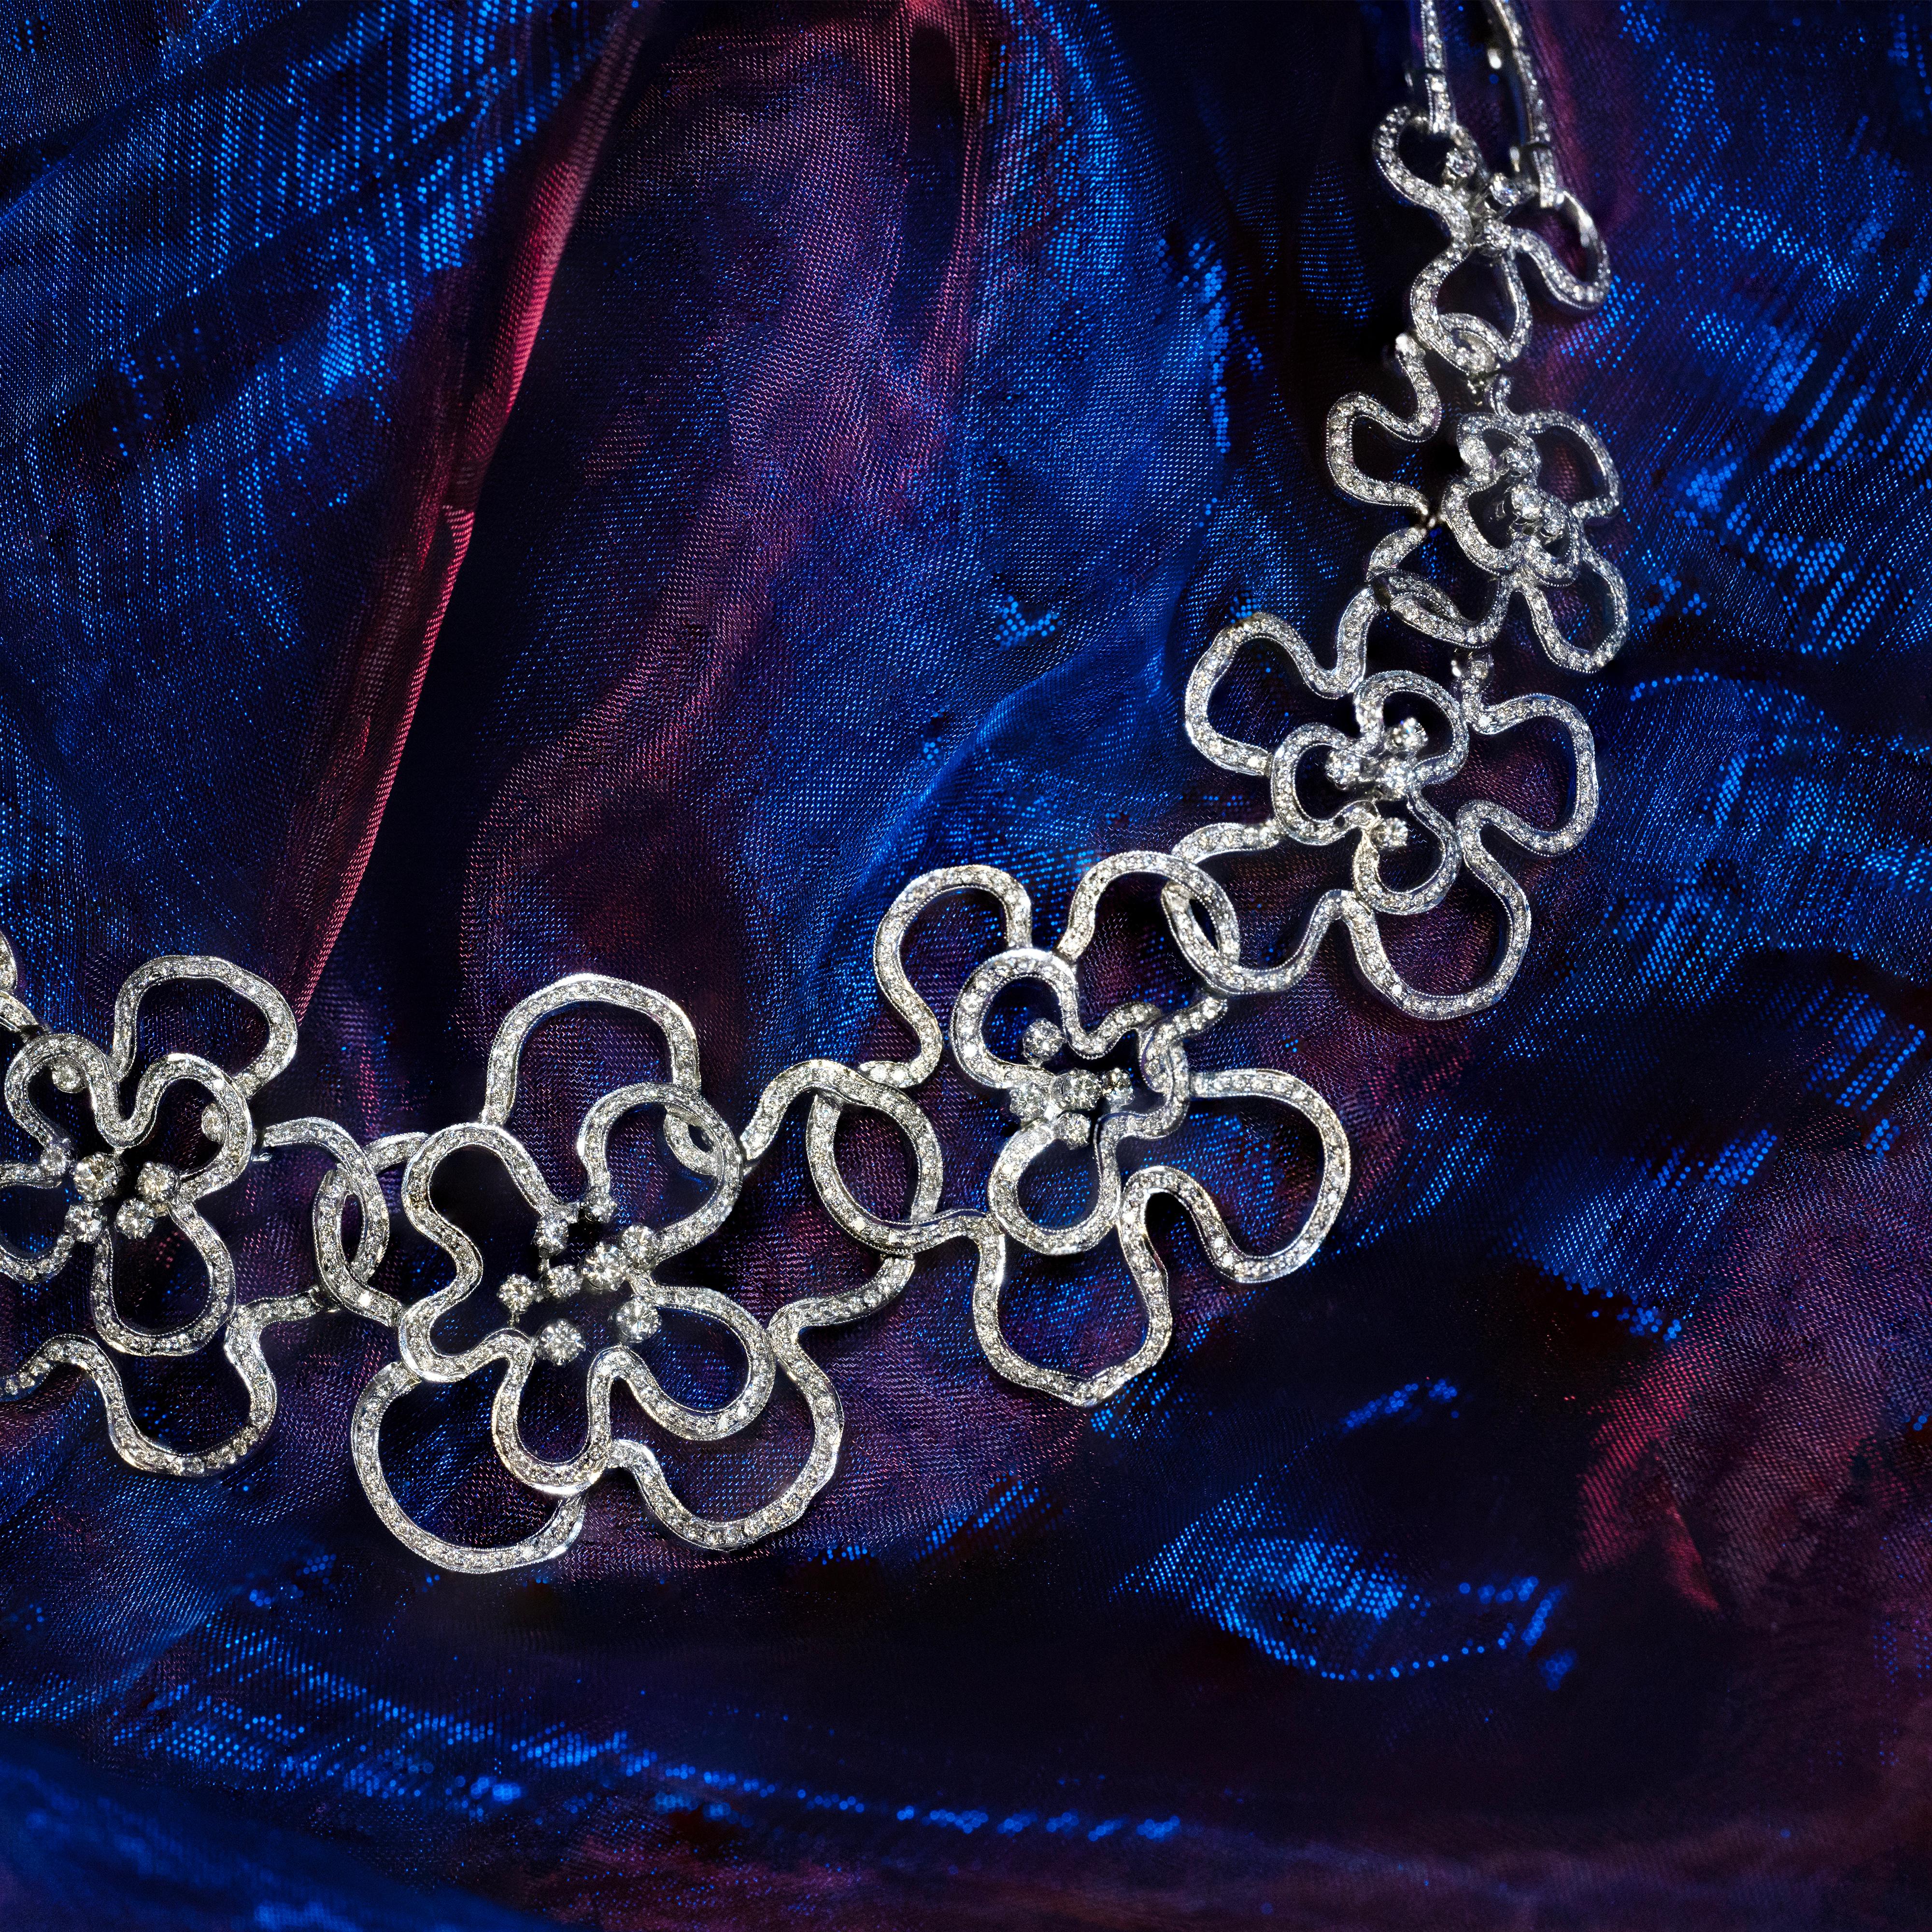 Diese spektakuläre Halskette zeichnet sich durch ein allmählich durchbrochenes Blumendesign aus, das aus 18 Karat Weißgold gefertigt ist. Für zusätzliche Eleganz ist die gesamte Oberfläche der Halskette mit hochwertigen runden Diamanten im